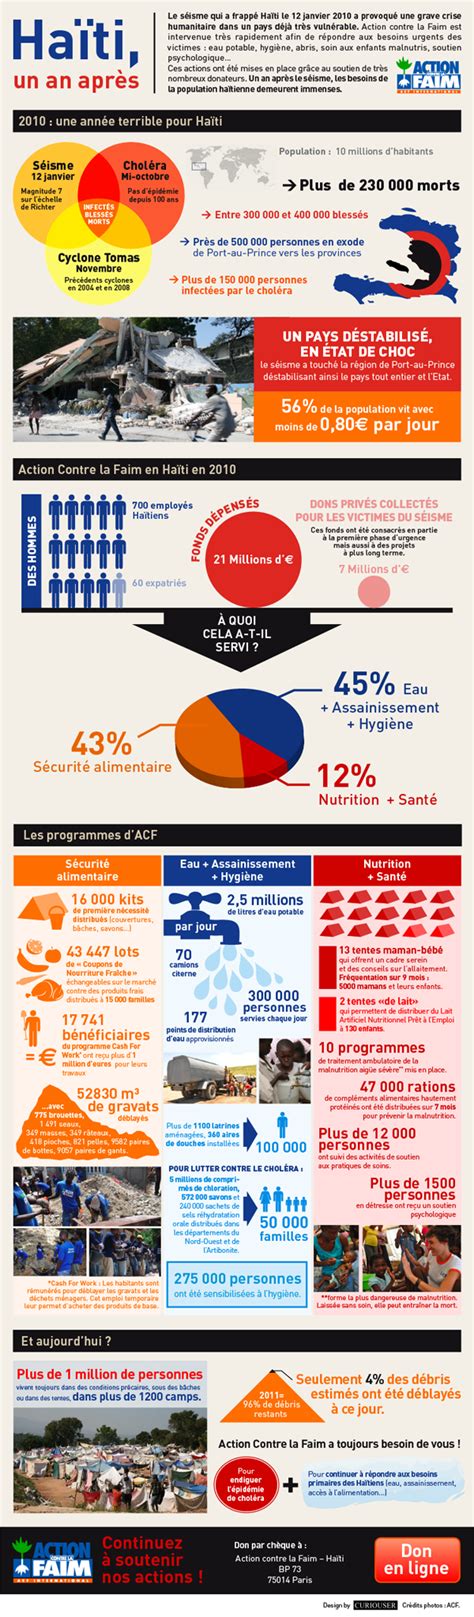 Infographie Sur Haiti Pour Action Contre La Faim